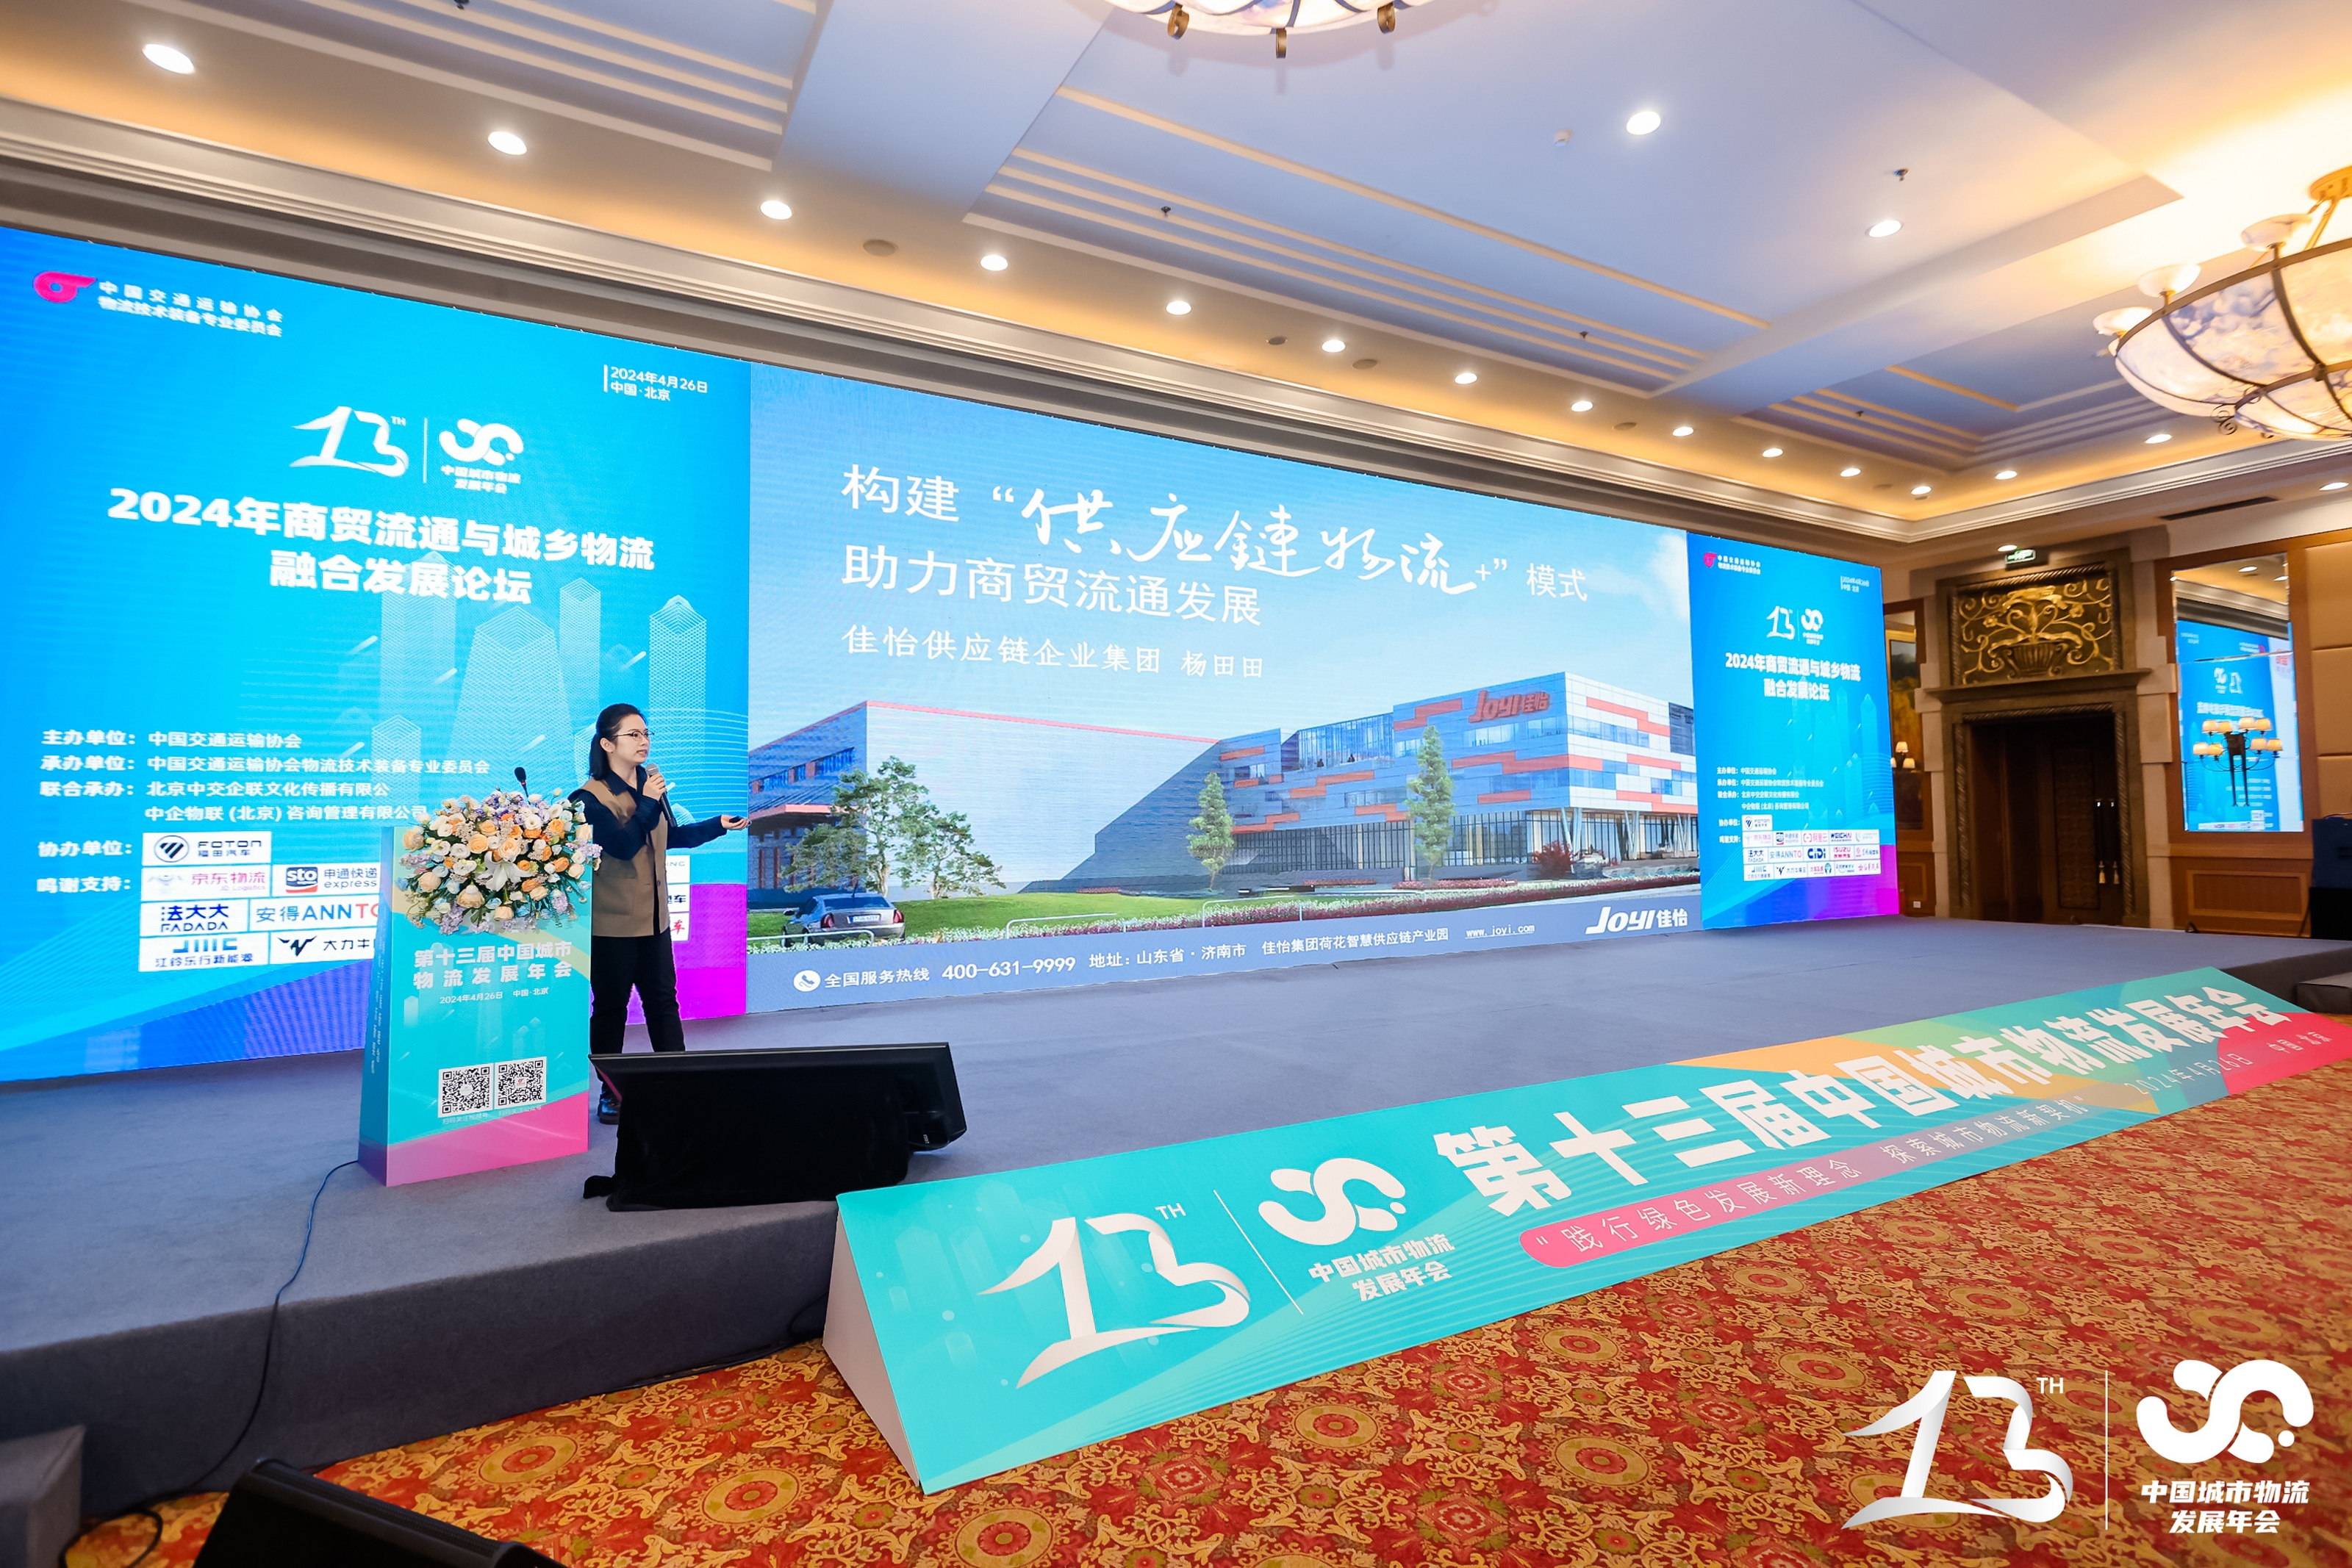 【佳怡快讯】佳怡供应链企业集团受邀参加第十三届中国城市物流发展年会并发表主题演讲